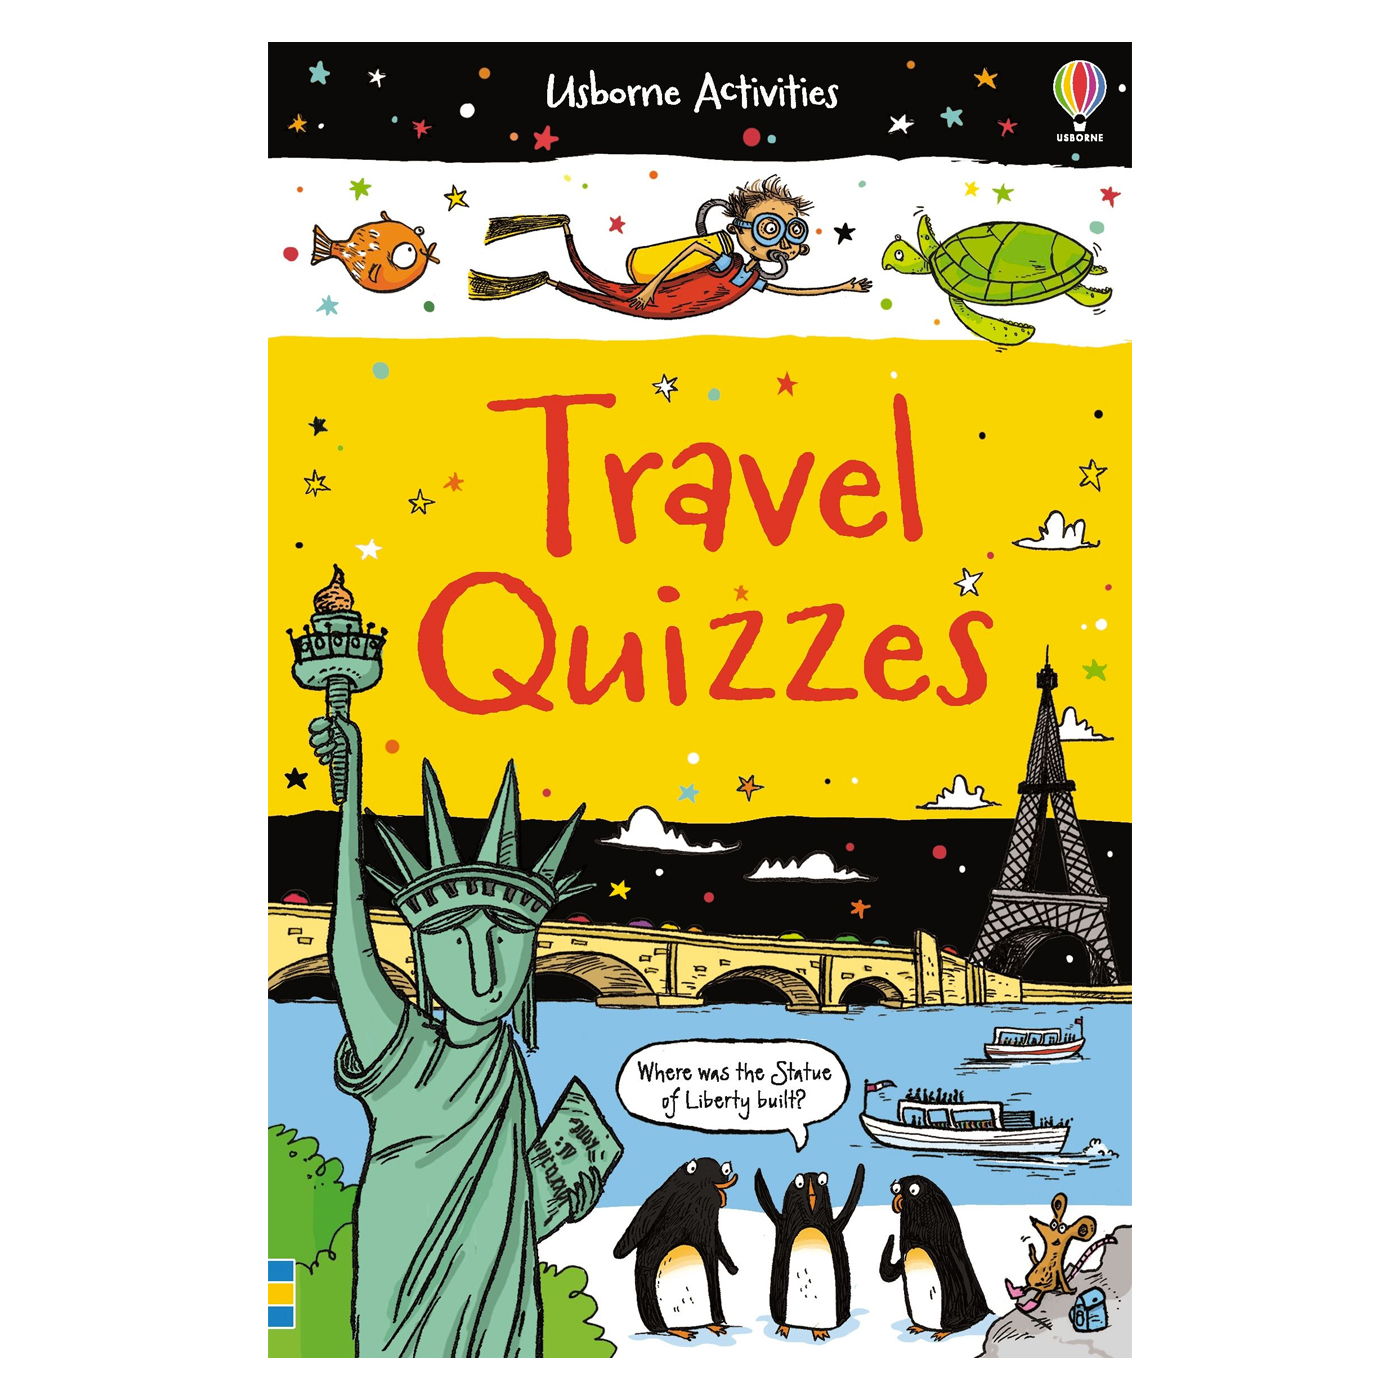  Travel Quizzes